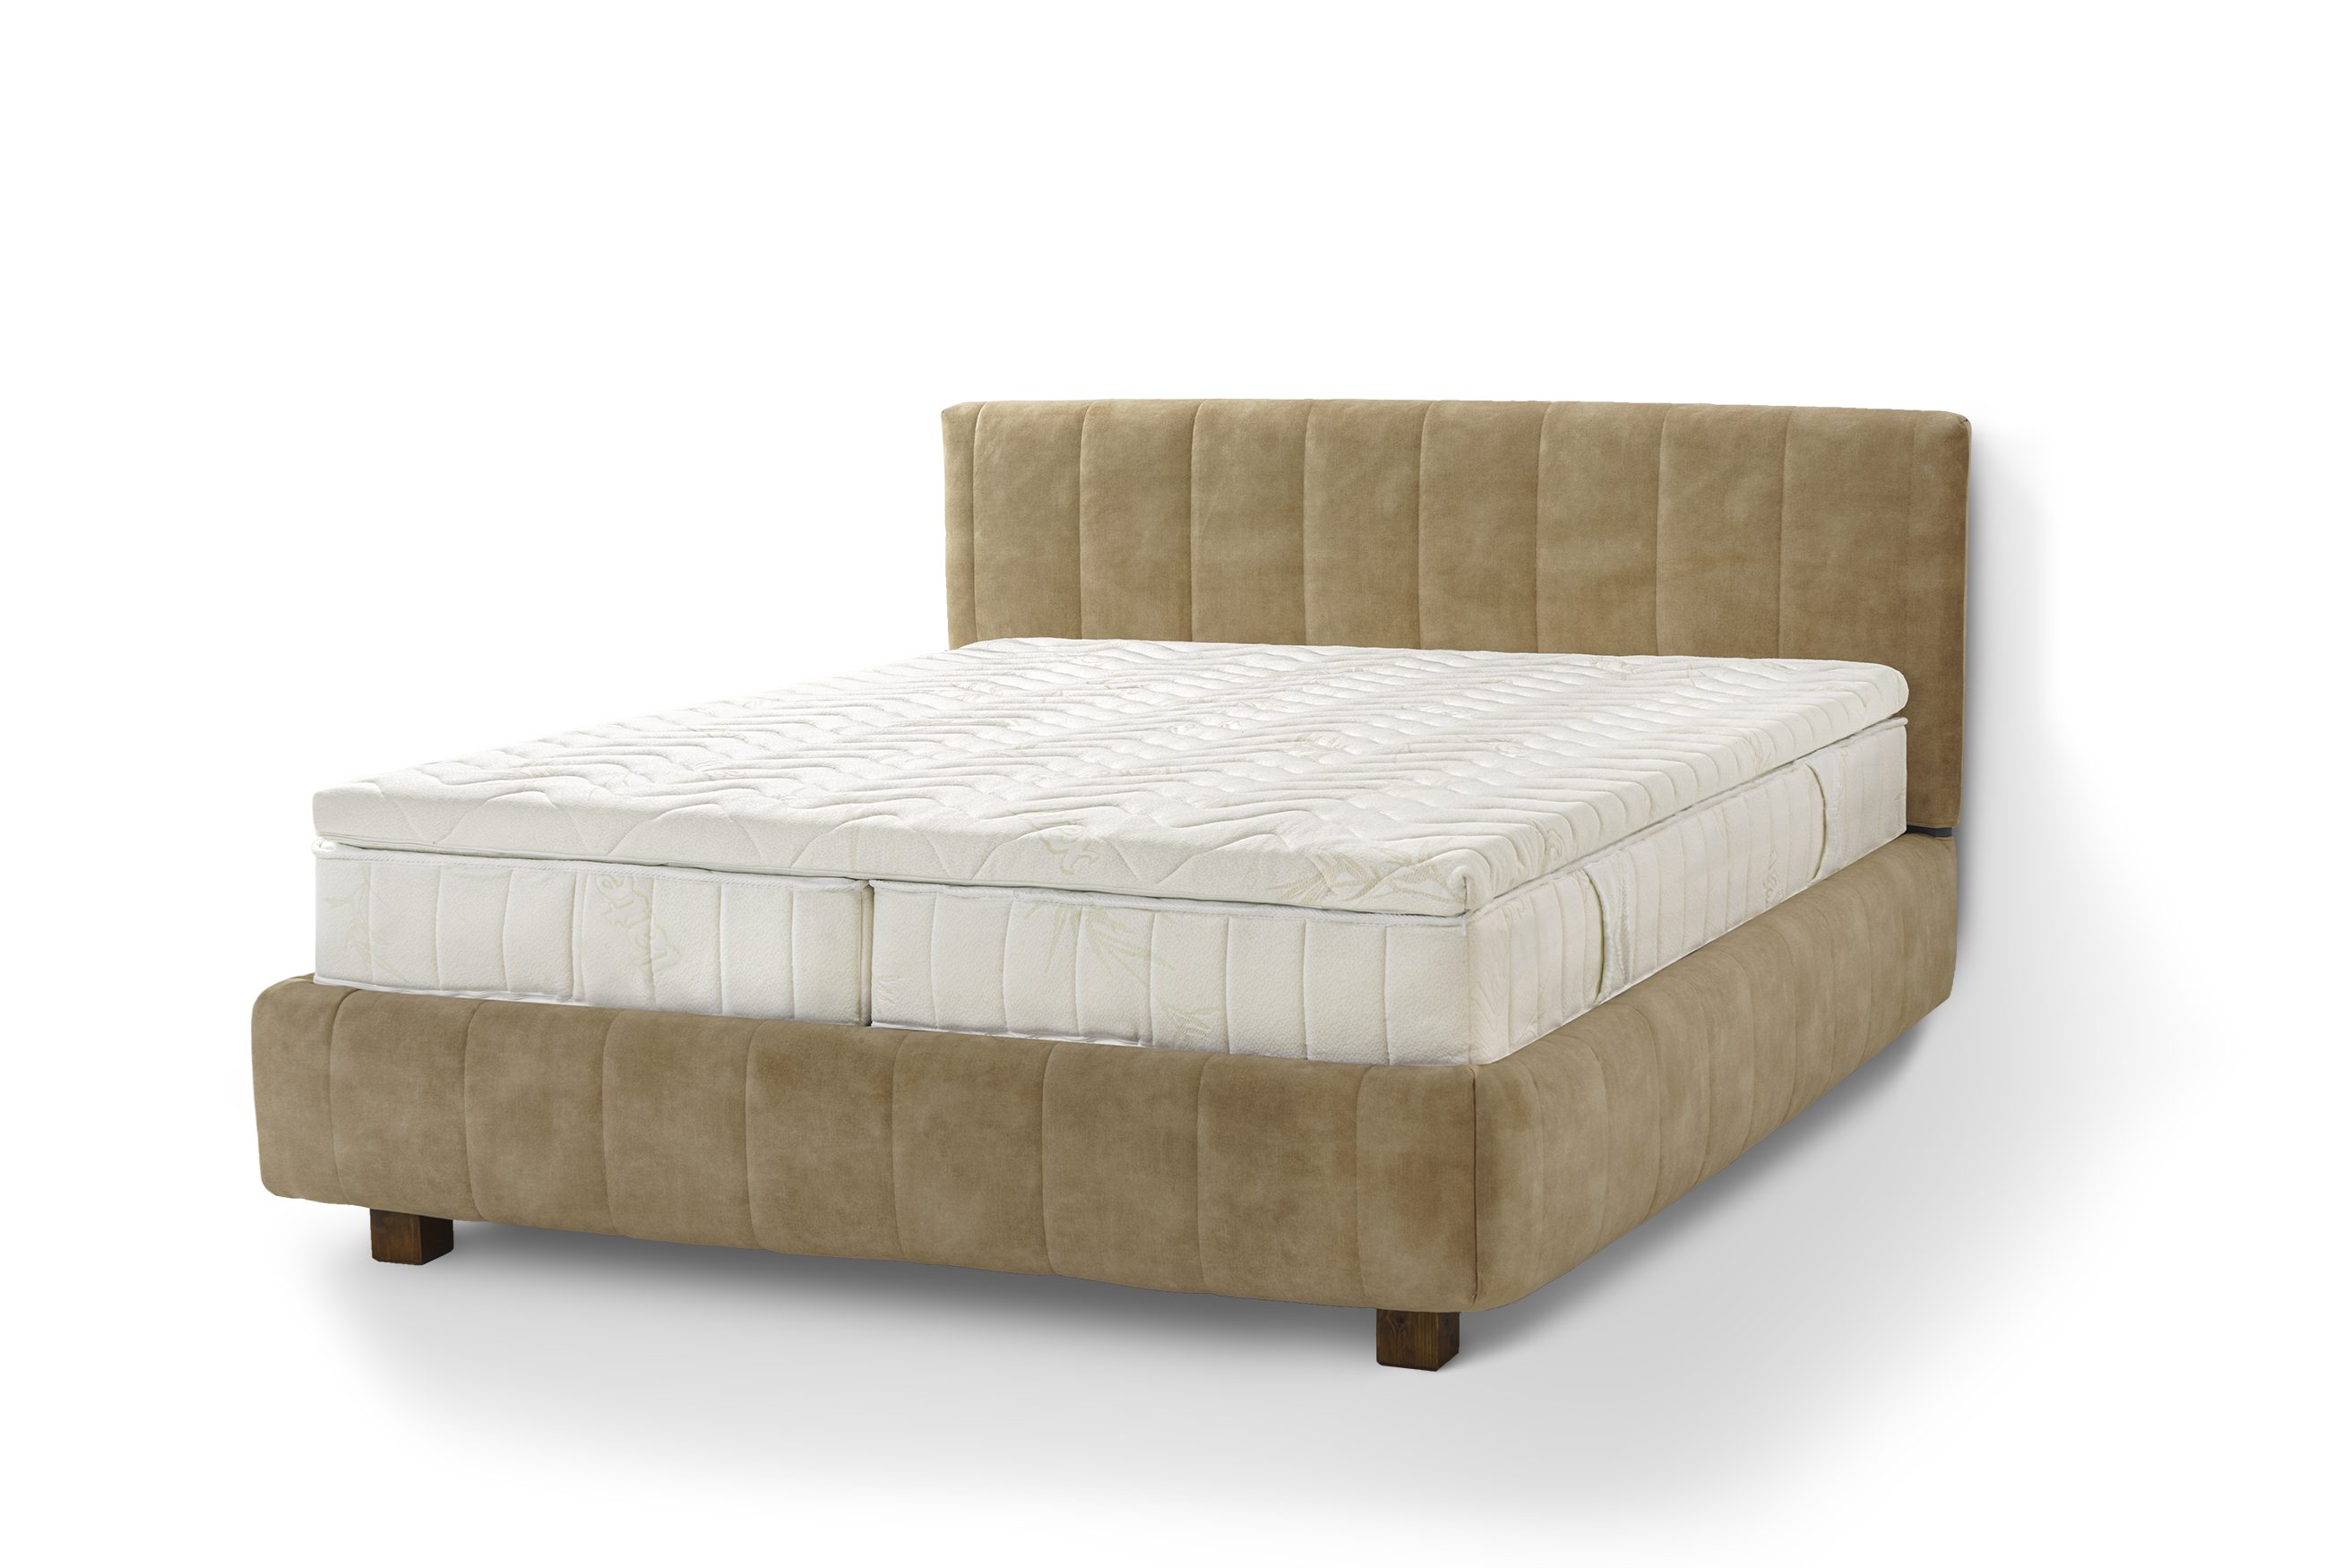 Letti Moderni Holzbett Bett Calma, hergestellt aus hochwertigem Massivholz Plüsch Tofee | Jugendbetten